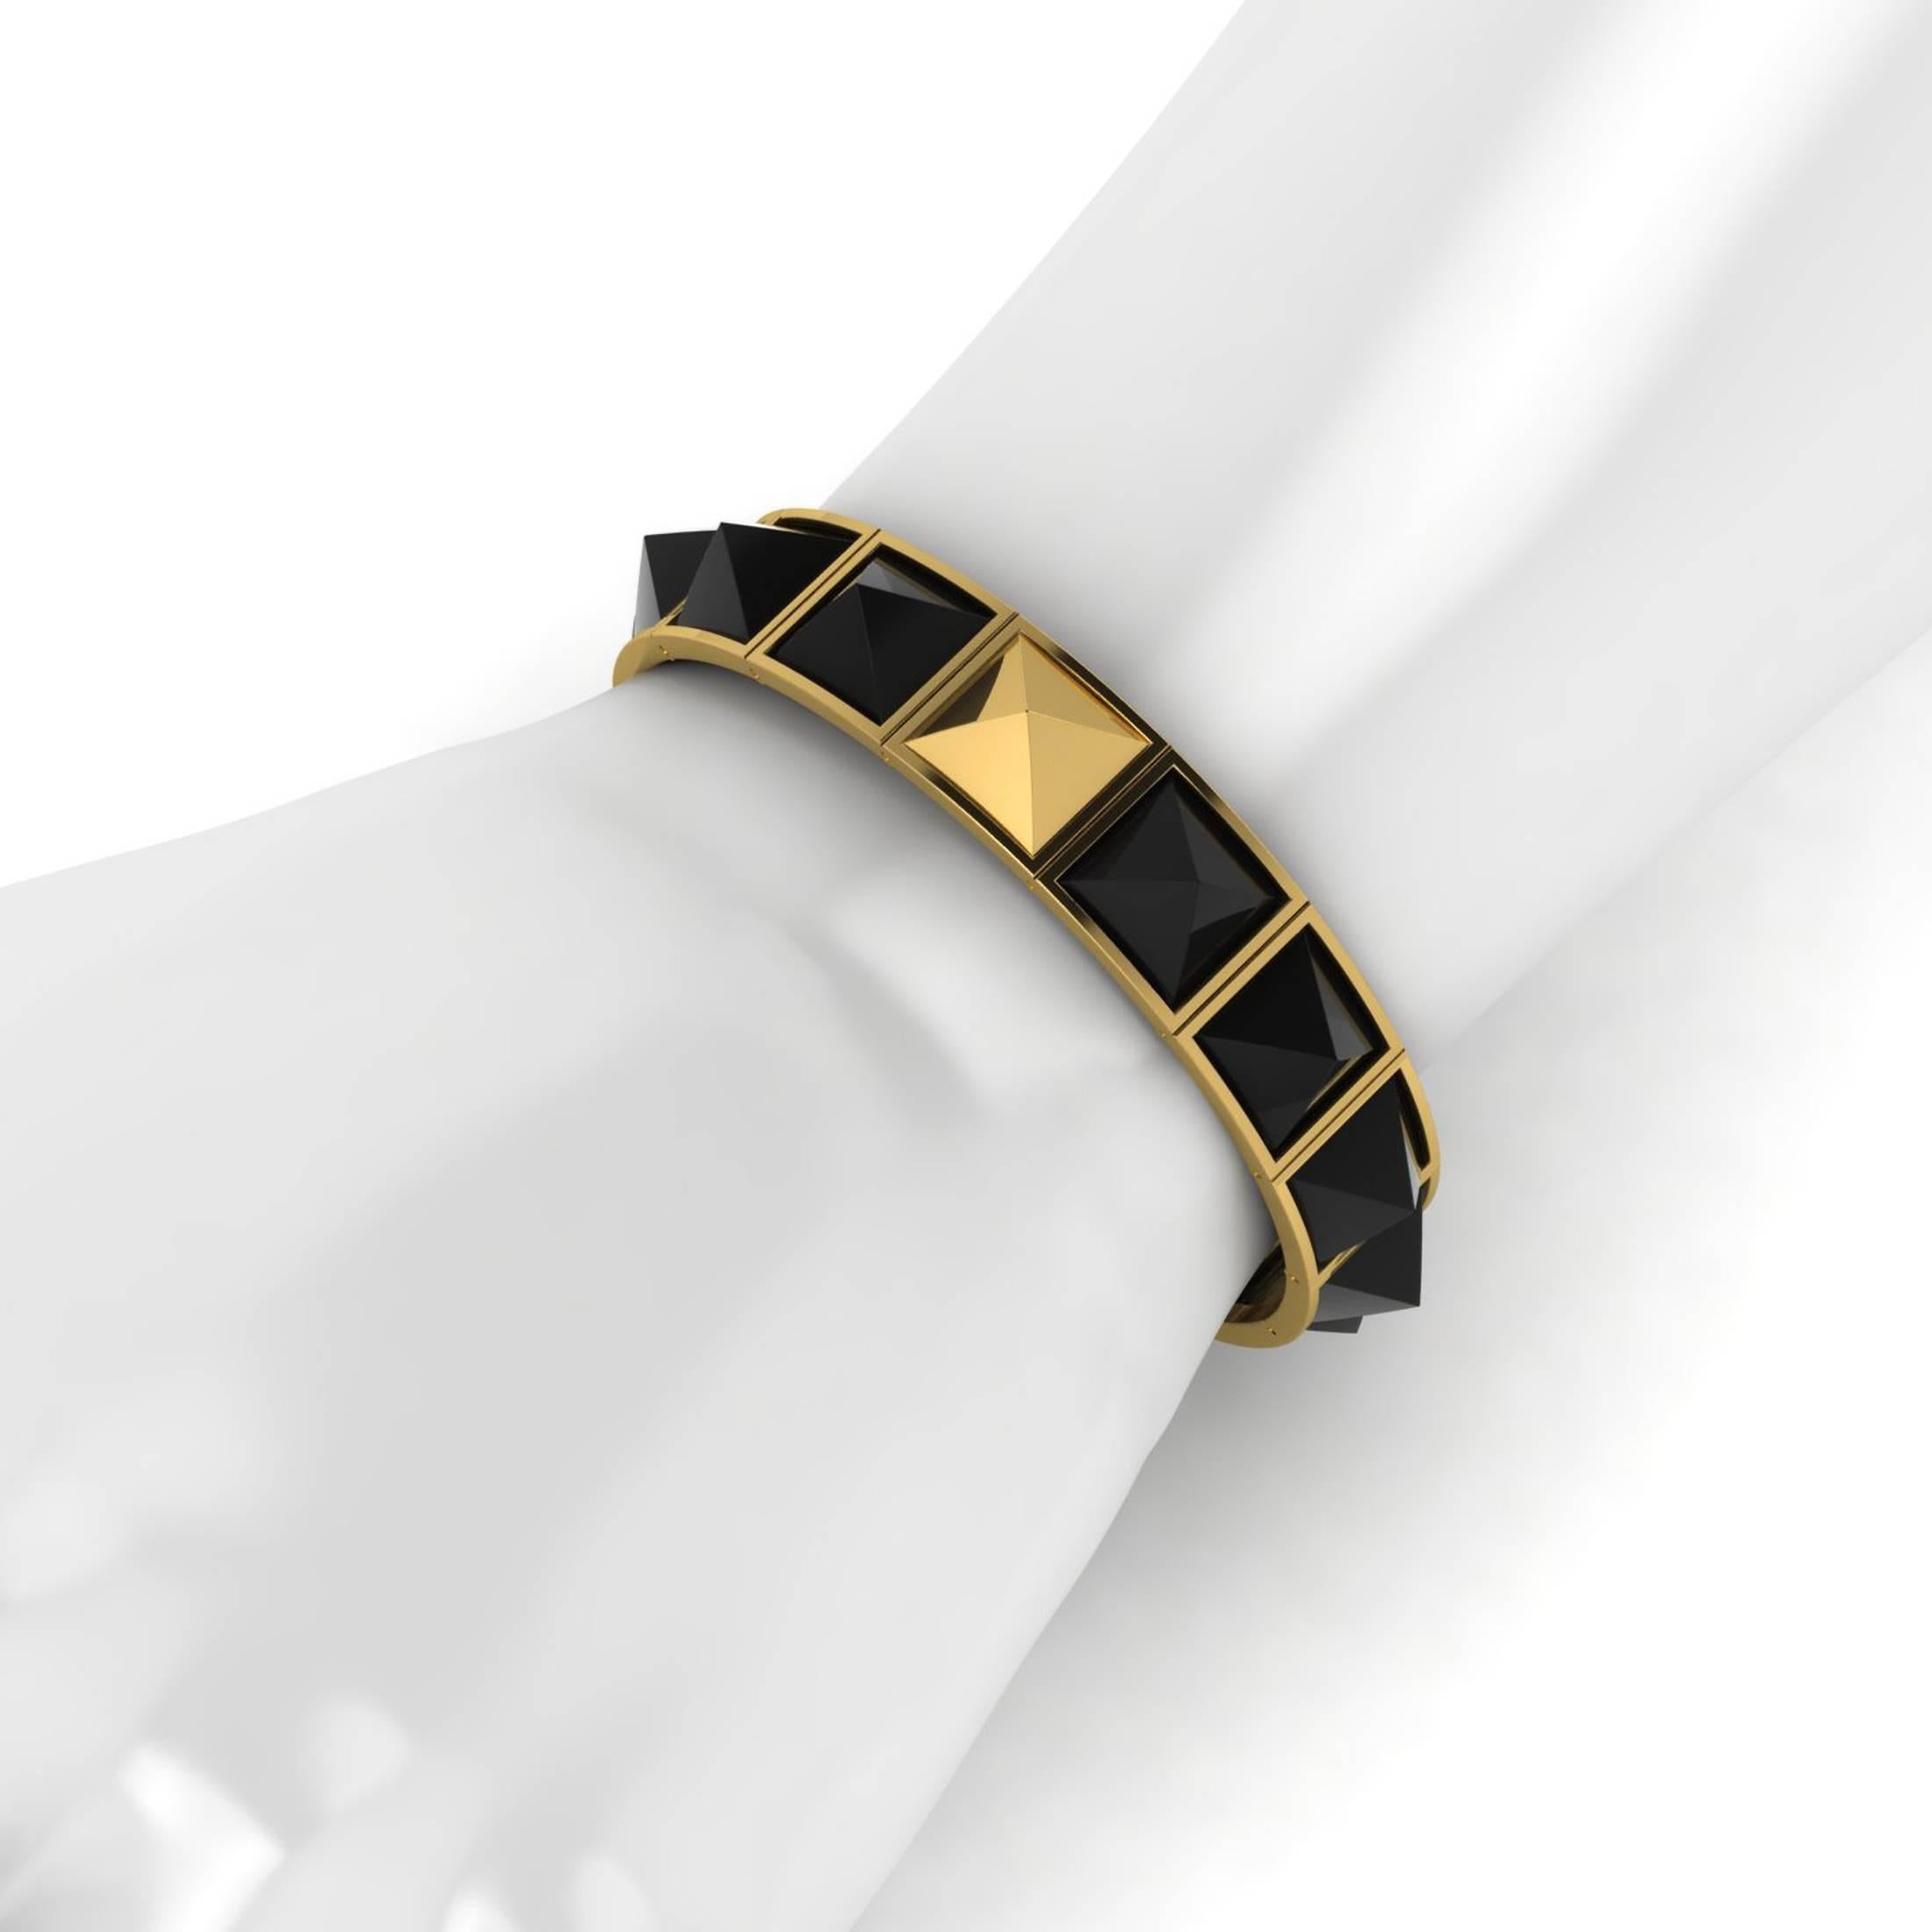 Onyx noir en forme de pyramide, spécialement taillé sur mesure pour ce design spécial, chaque onyx est sélectionné pour avoir le maximum de brillance et de couleur foncée, serti dans un bracelet fait à la main à New York, convexe en or jaune 18k,